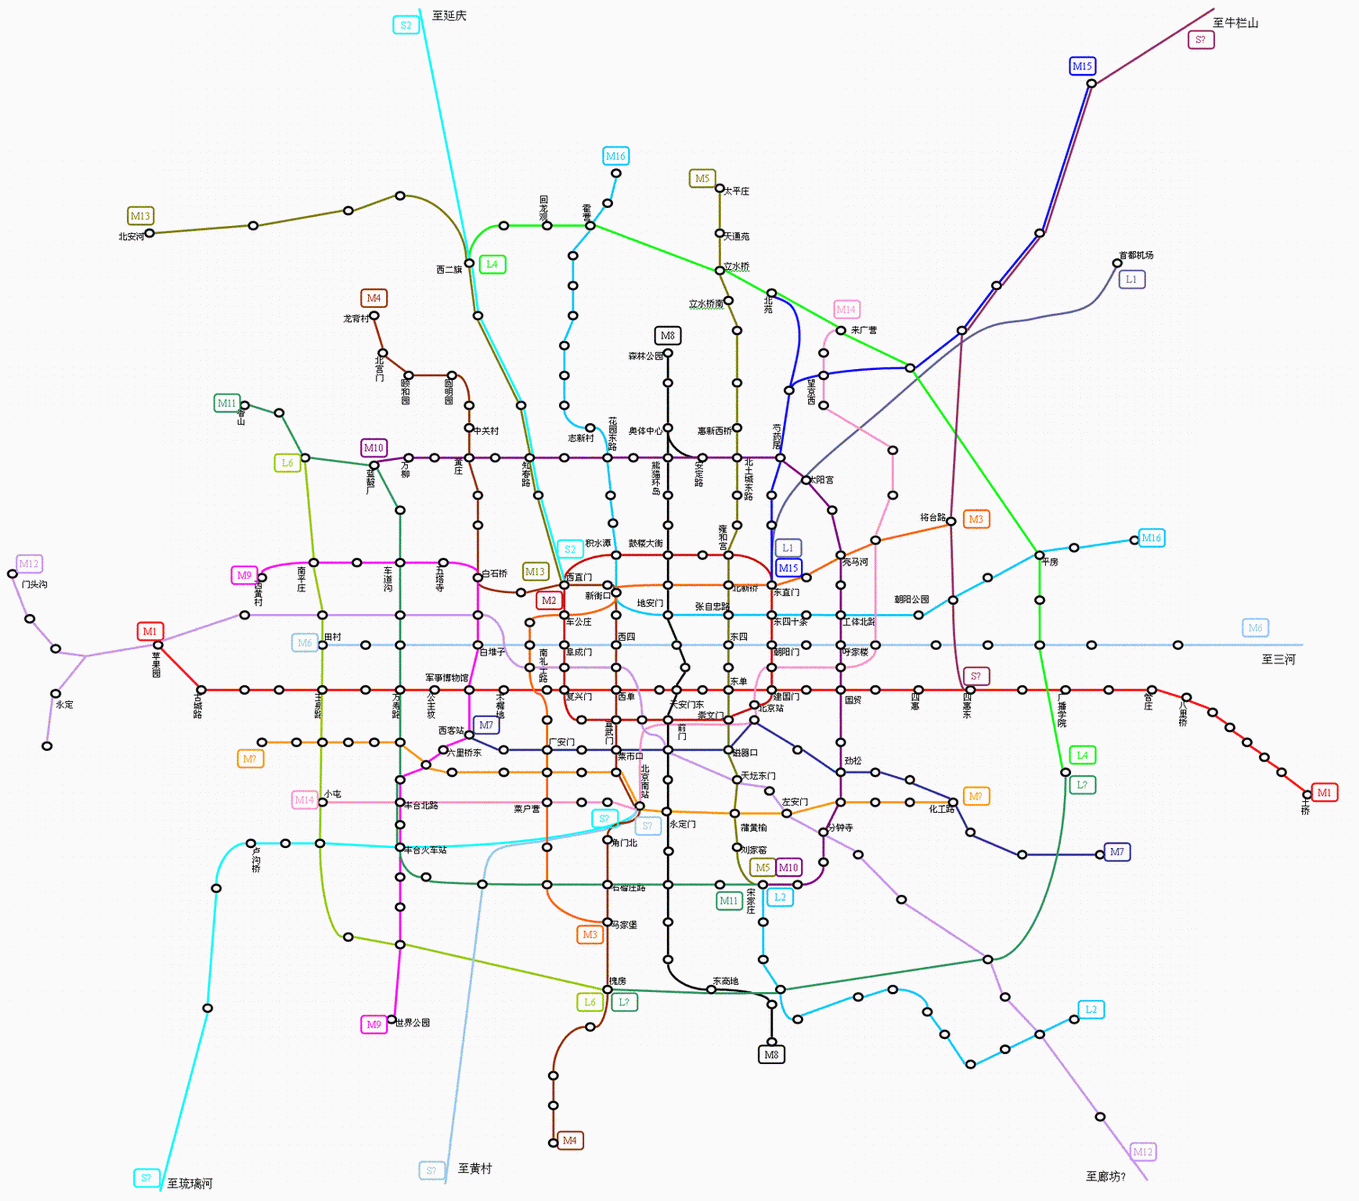 南京地铁14号线开建了吗预计什么时候建好停靠的站点是哪几个可以用地图标出来给我嘛谢谢啦！（浦口地铁线号13规划）